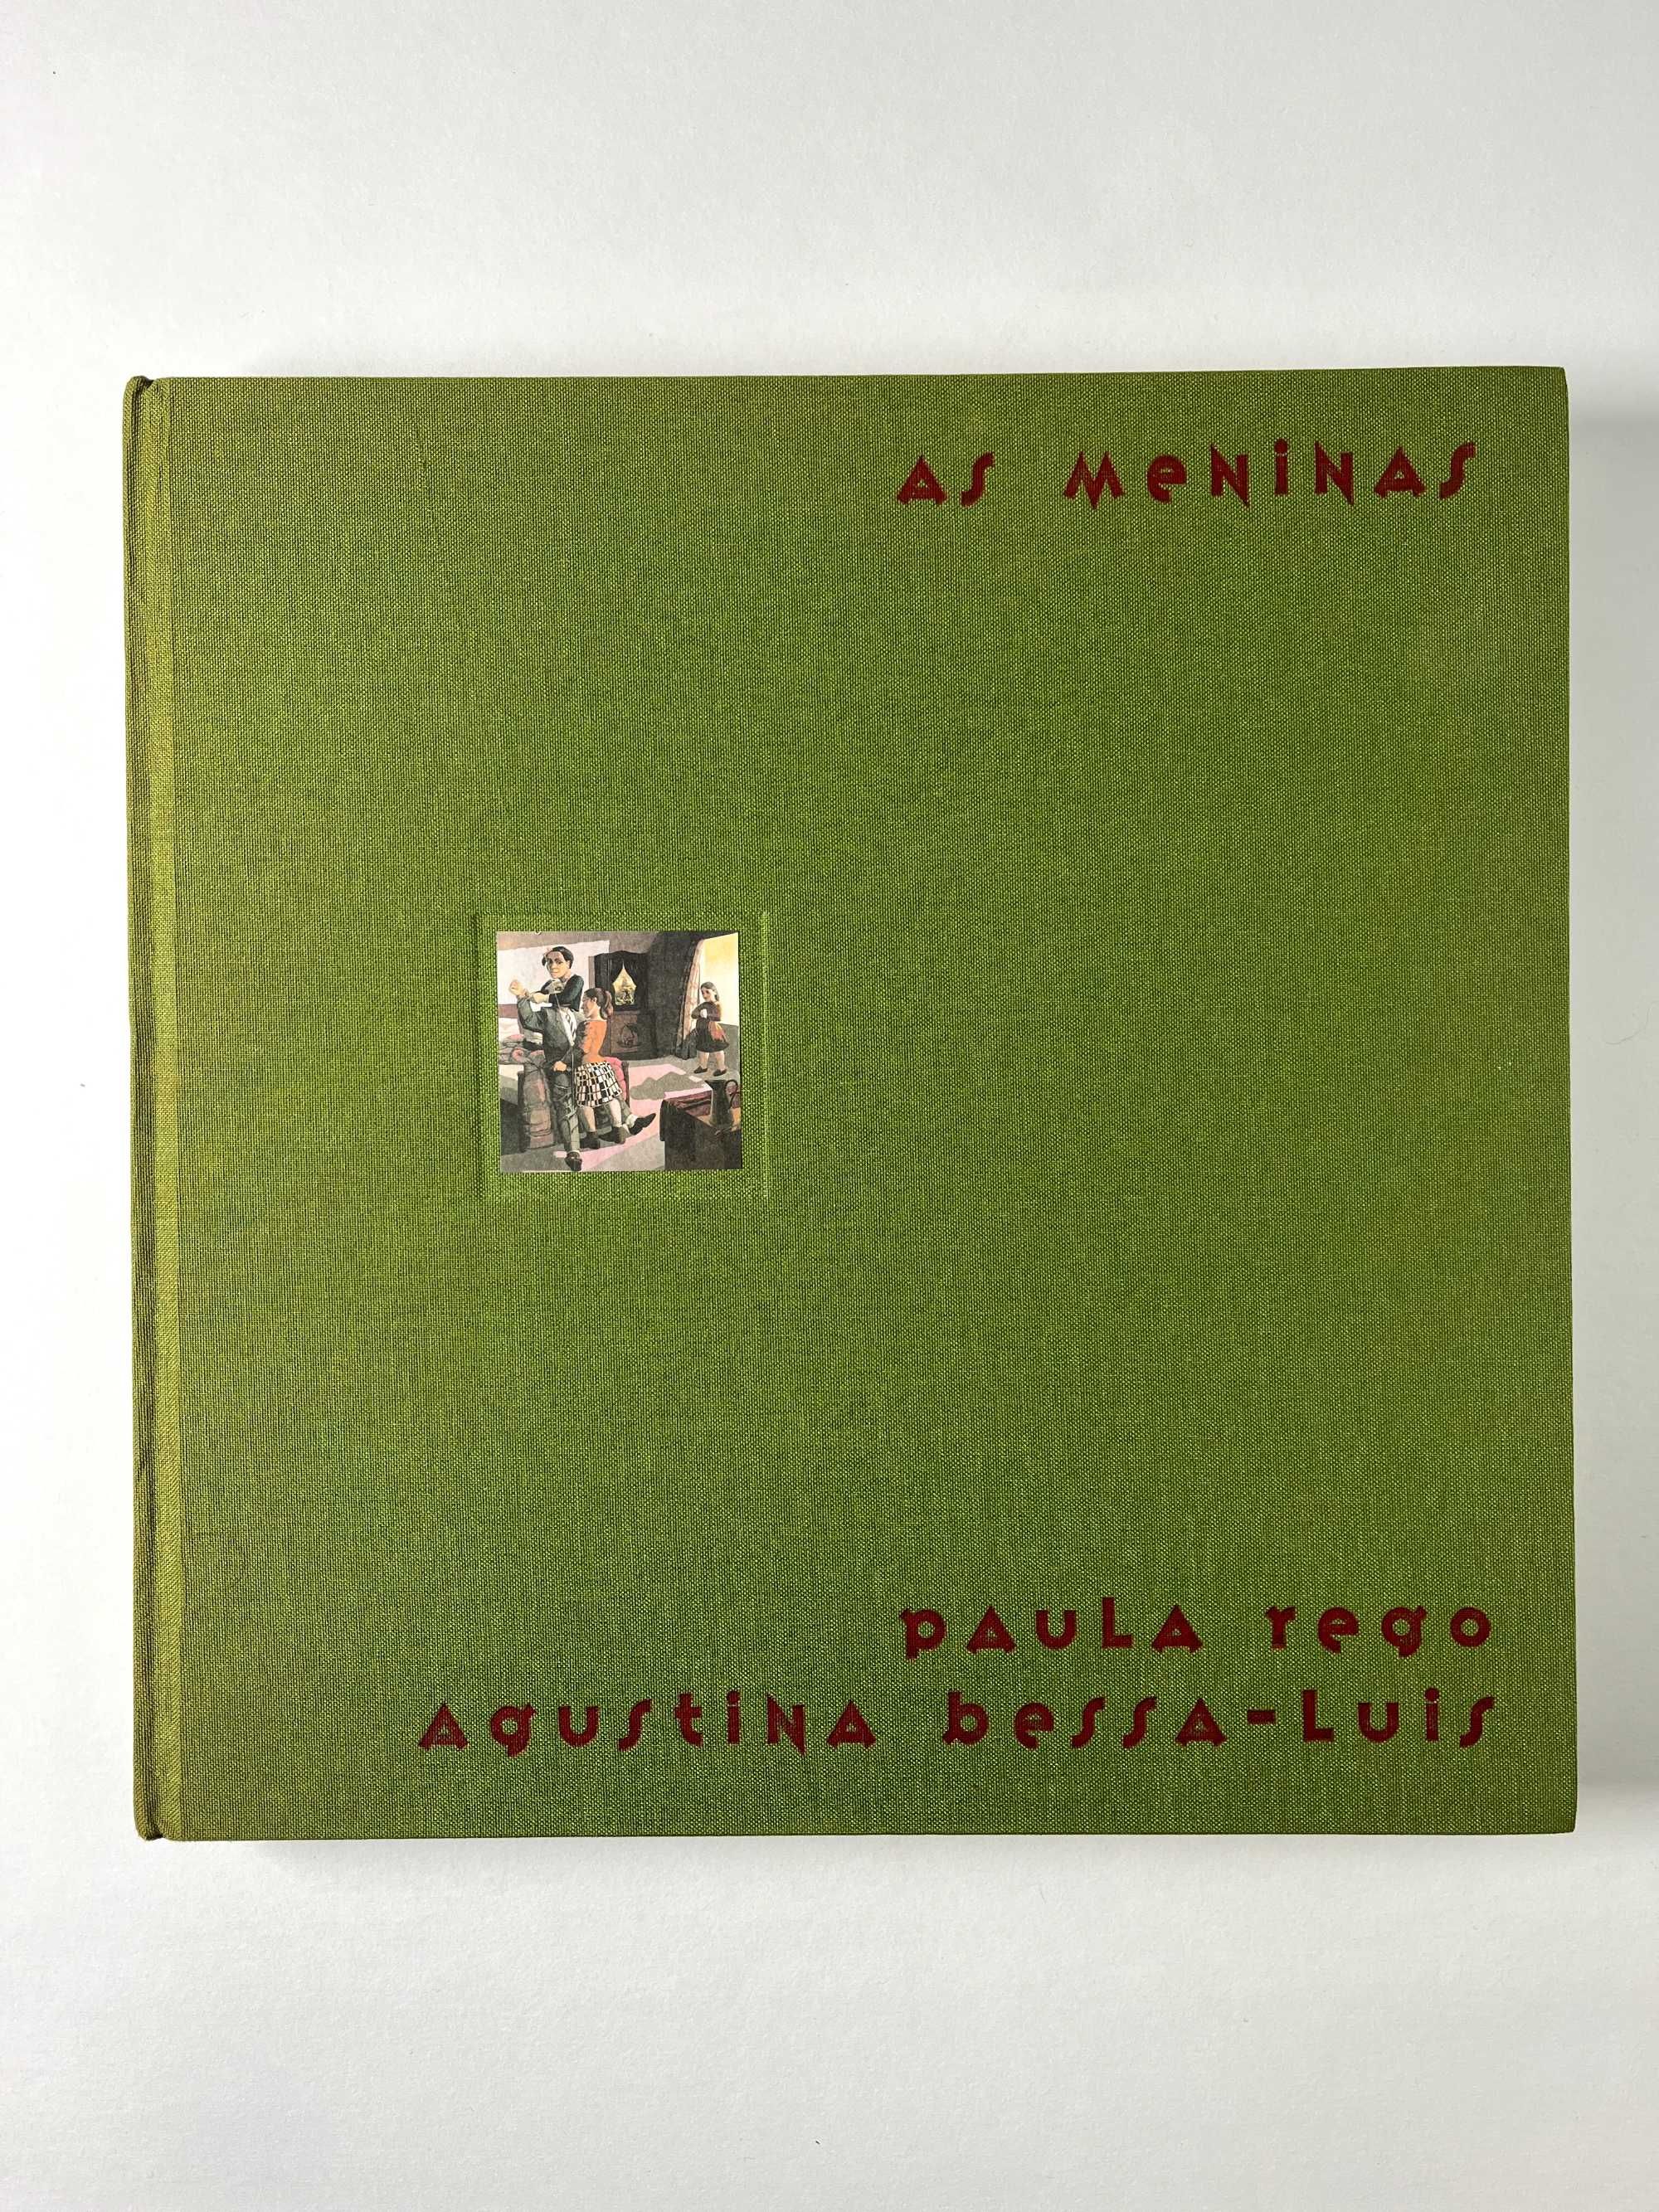 Livro Paula Rego e Agustina Bessa-Luis As Meninas 2001